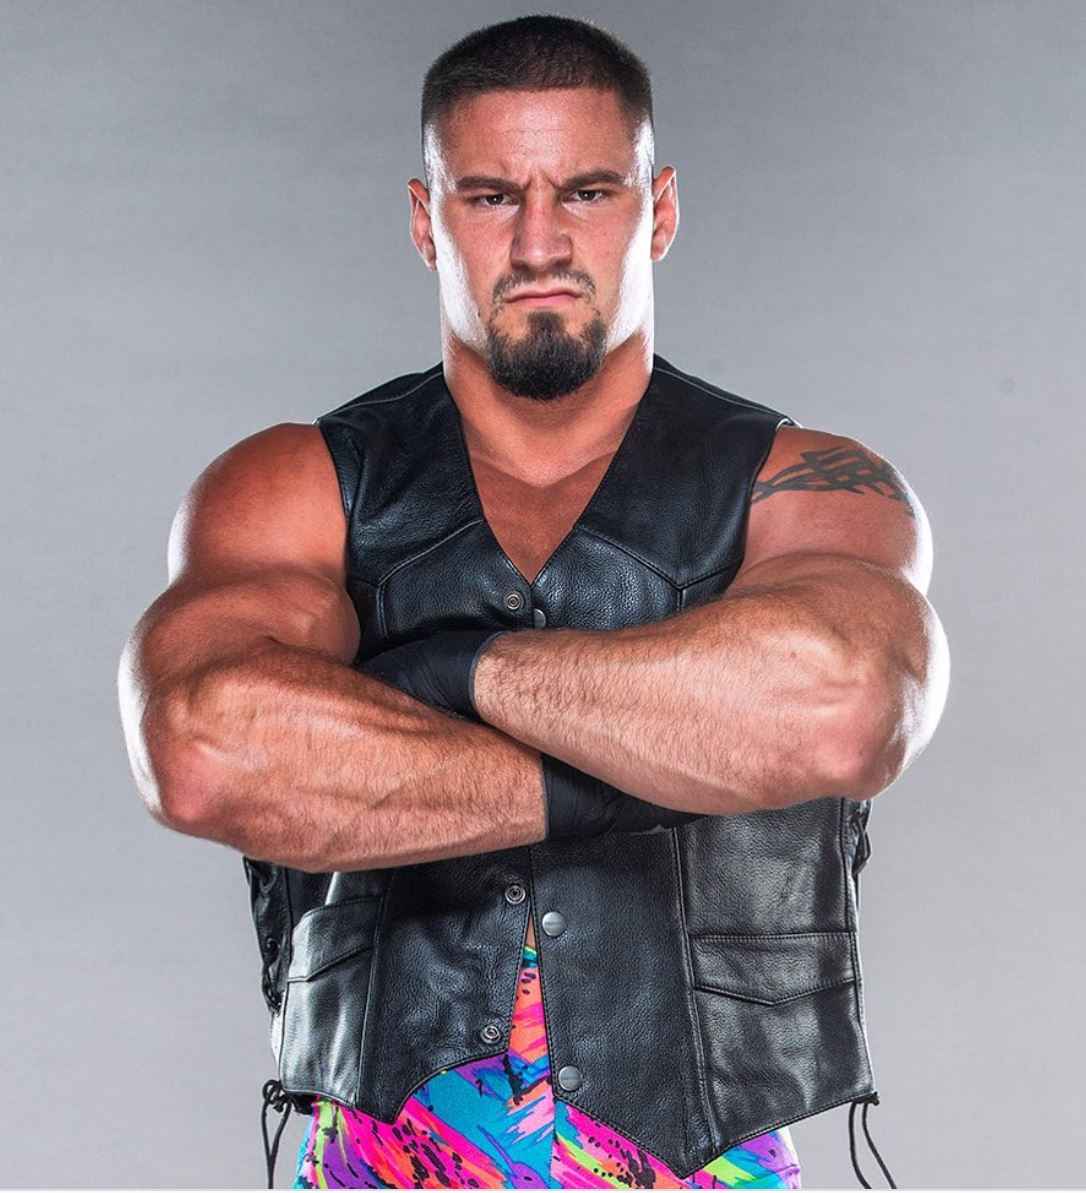 Welcome to NXT, Rex Steiner